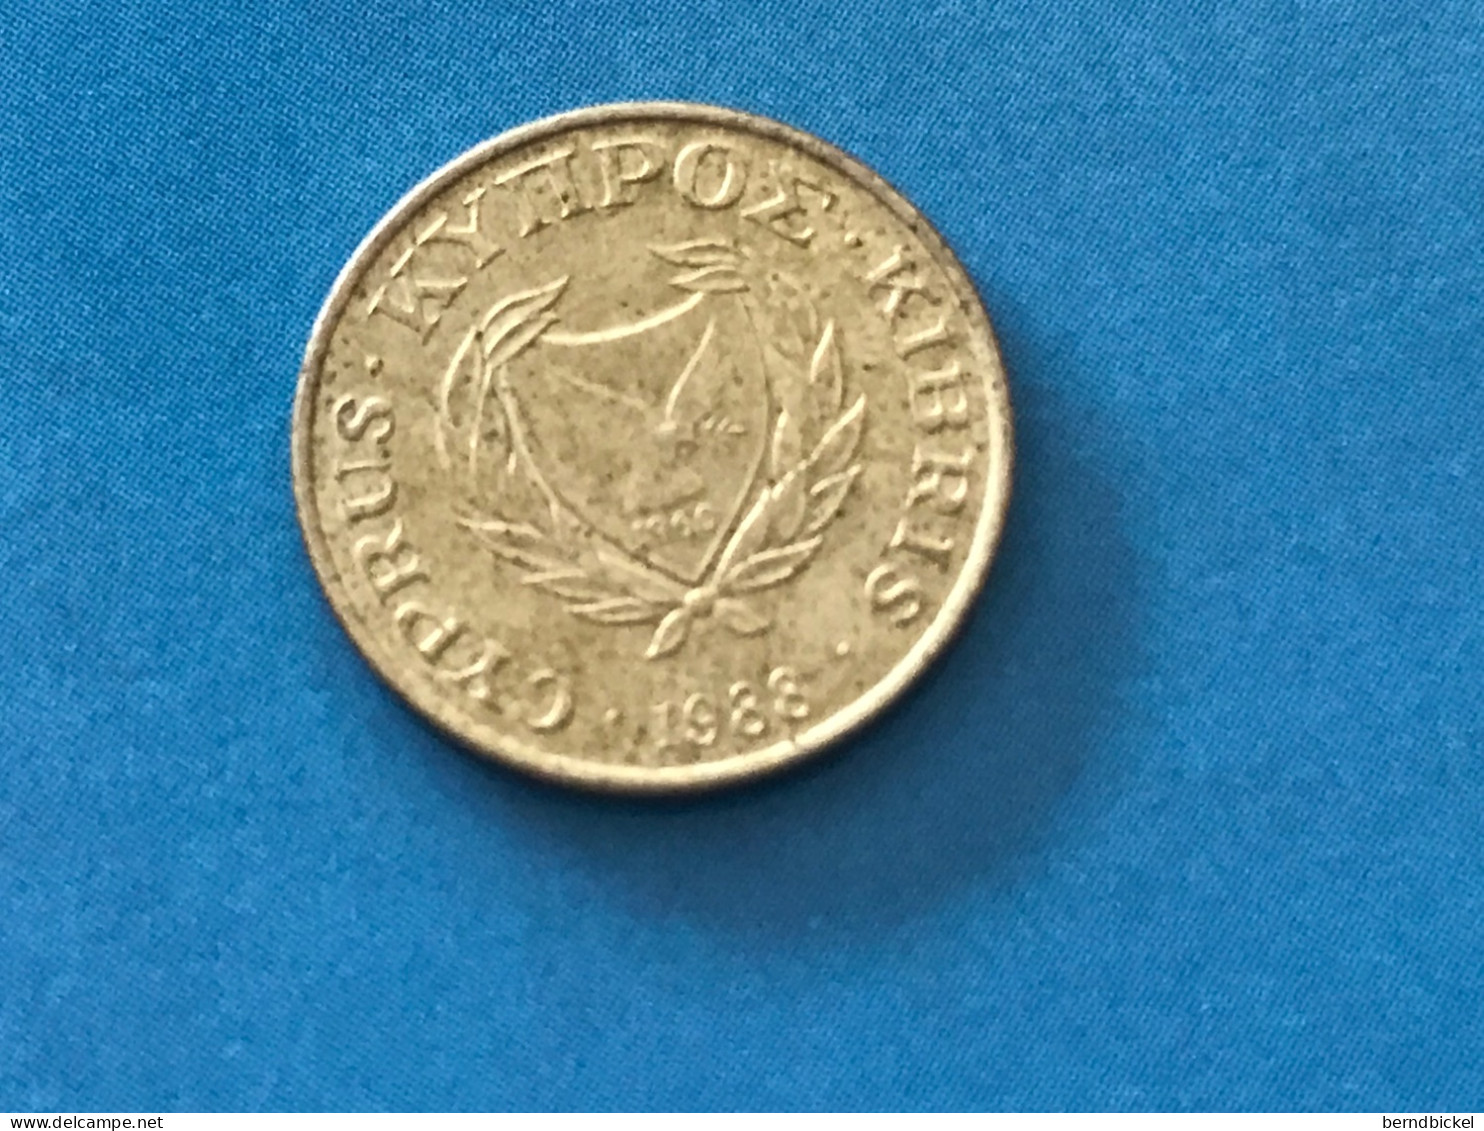 Münze Münzen Umlaufmünze Zypern 1 Cent 1988 - Chypre